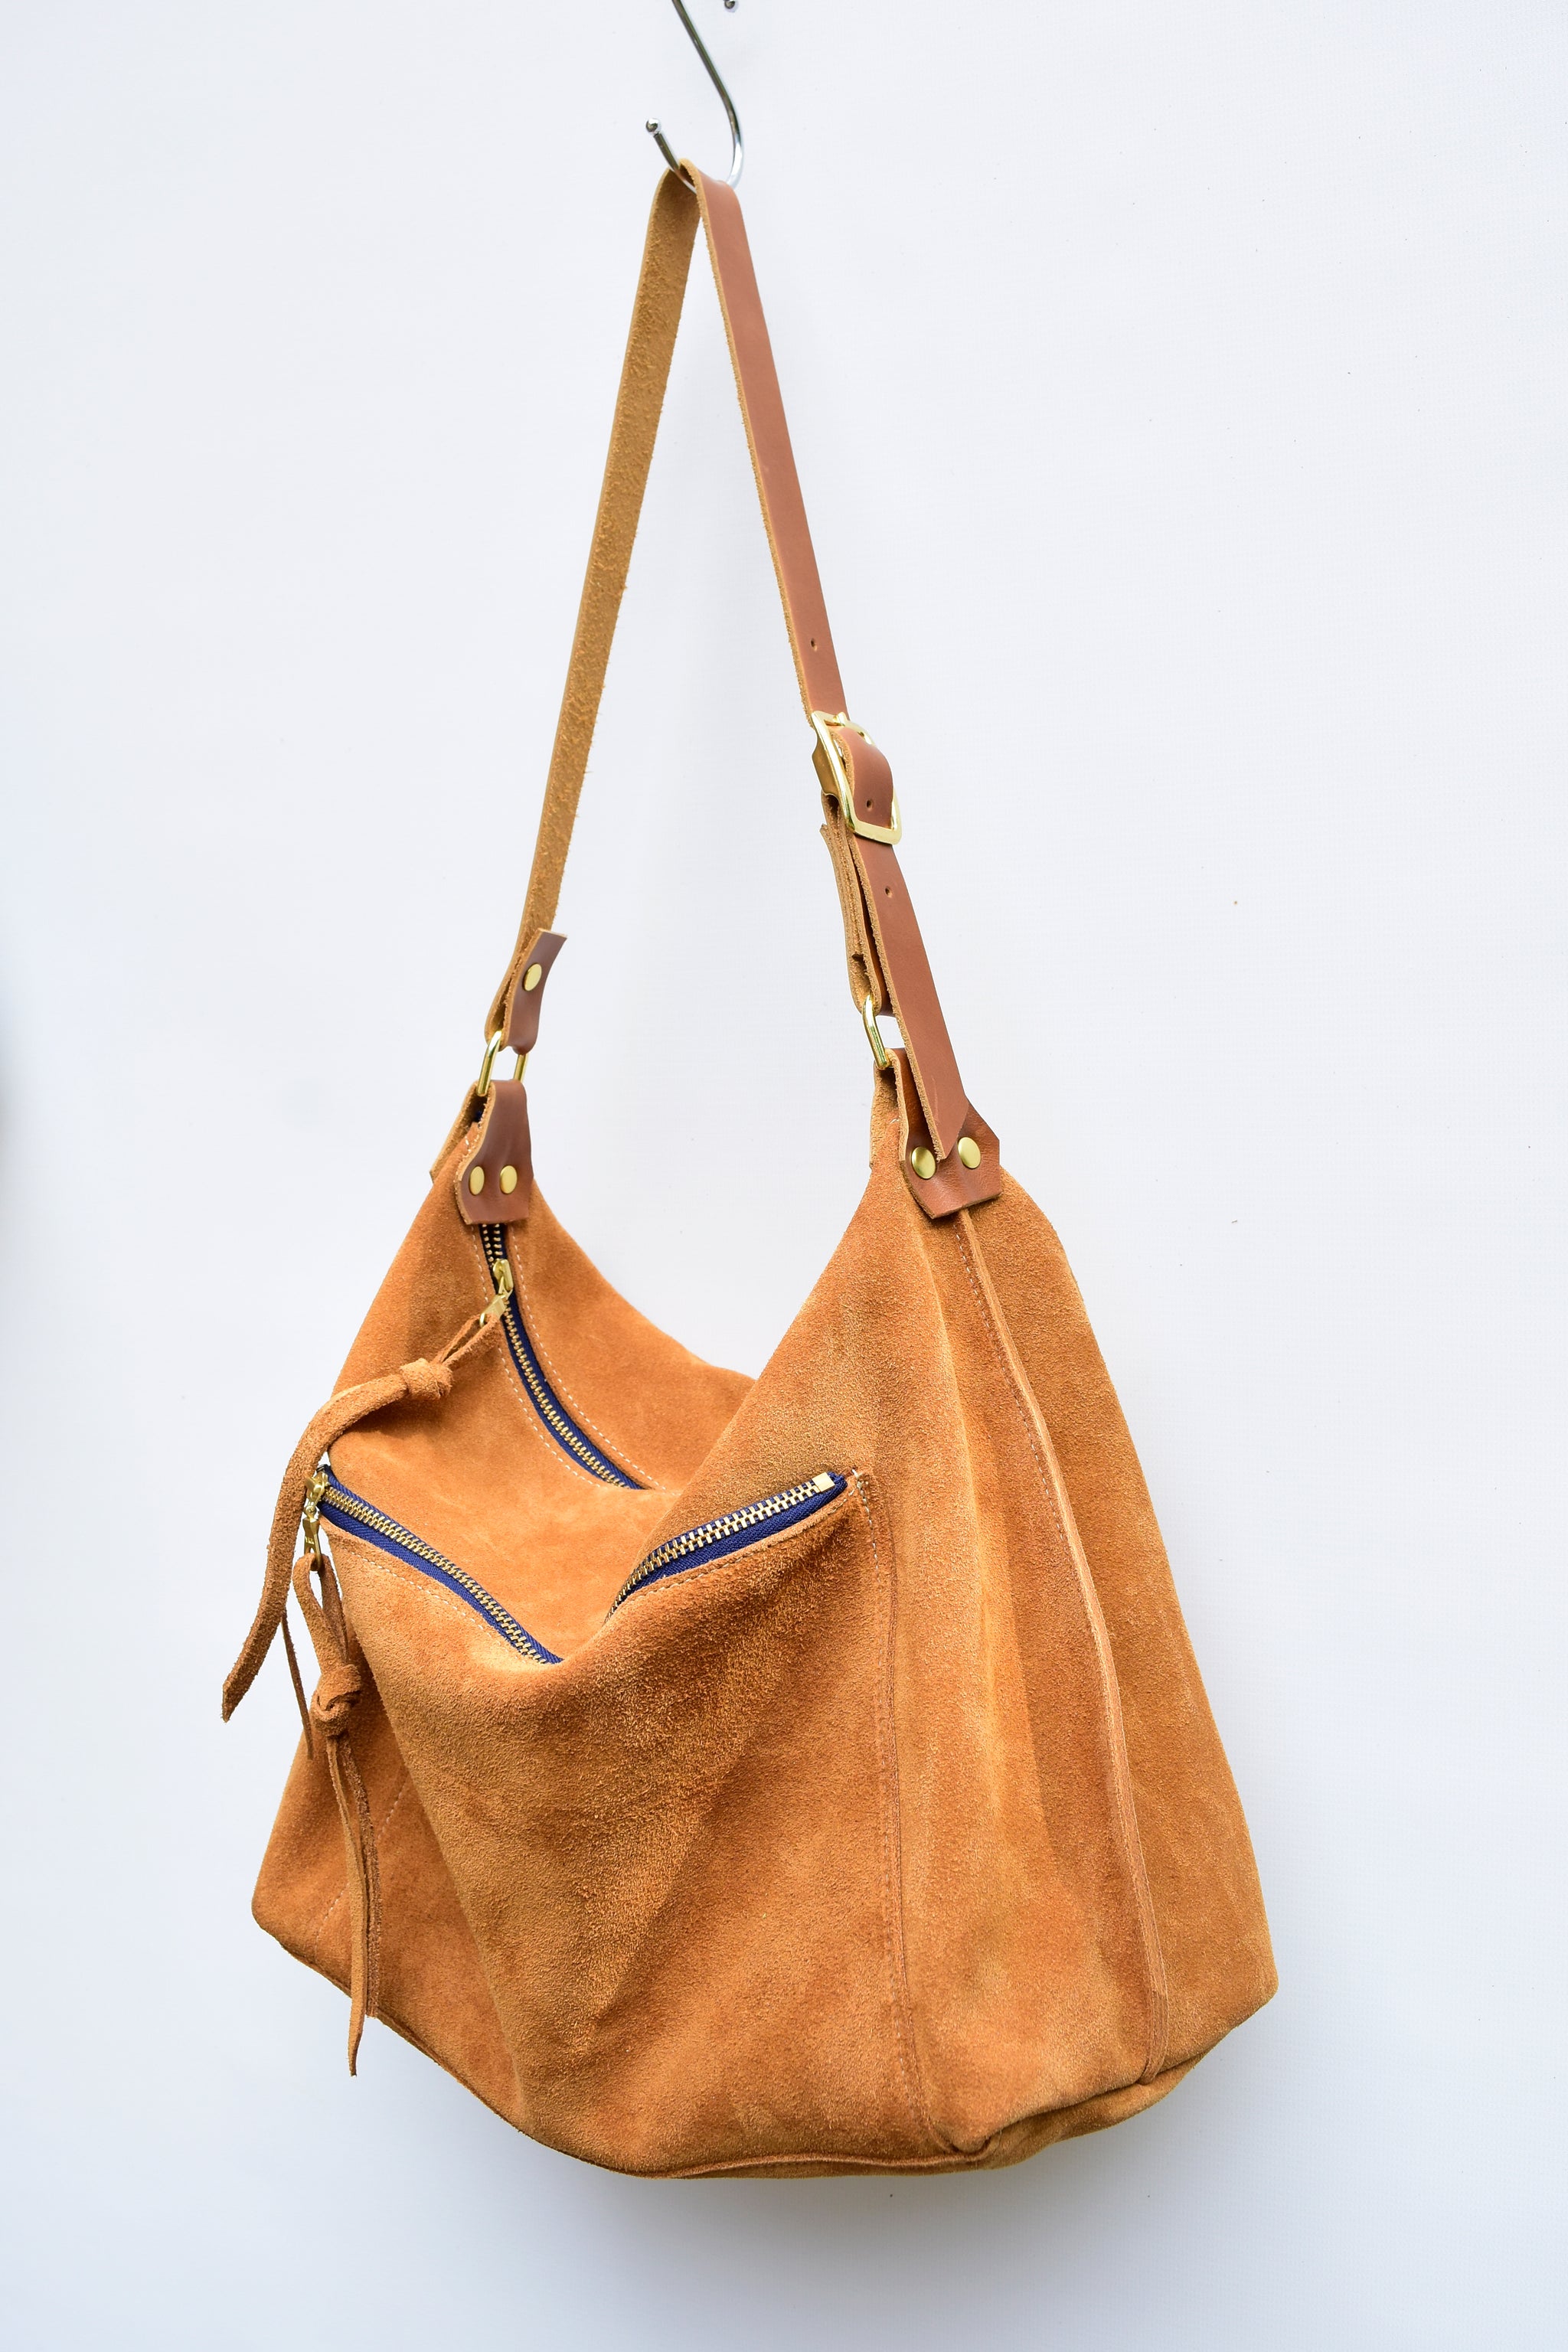 new handbags: suede, satchels & crossbody bags